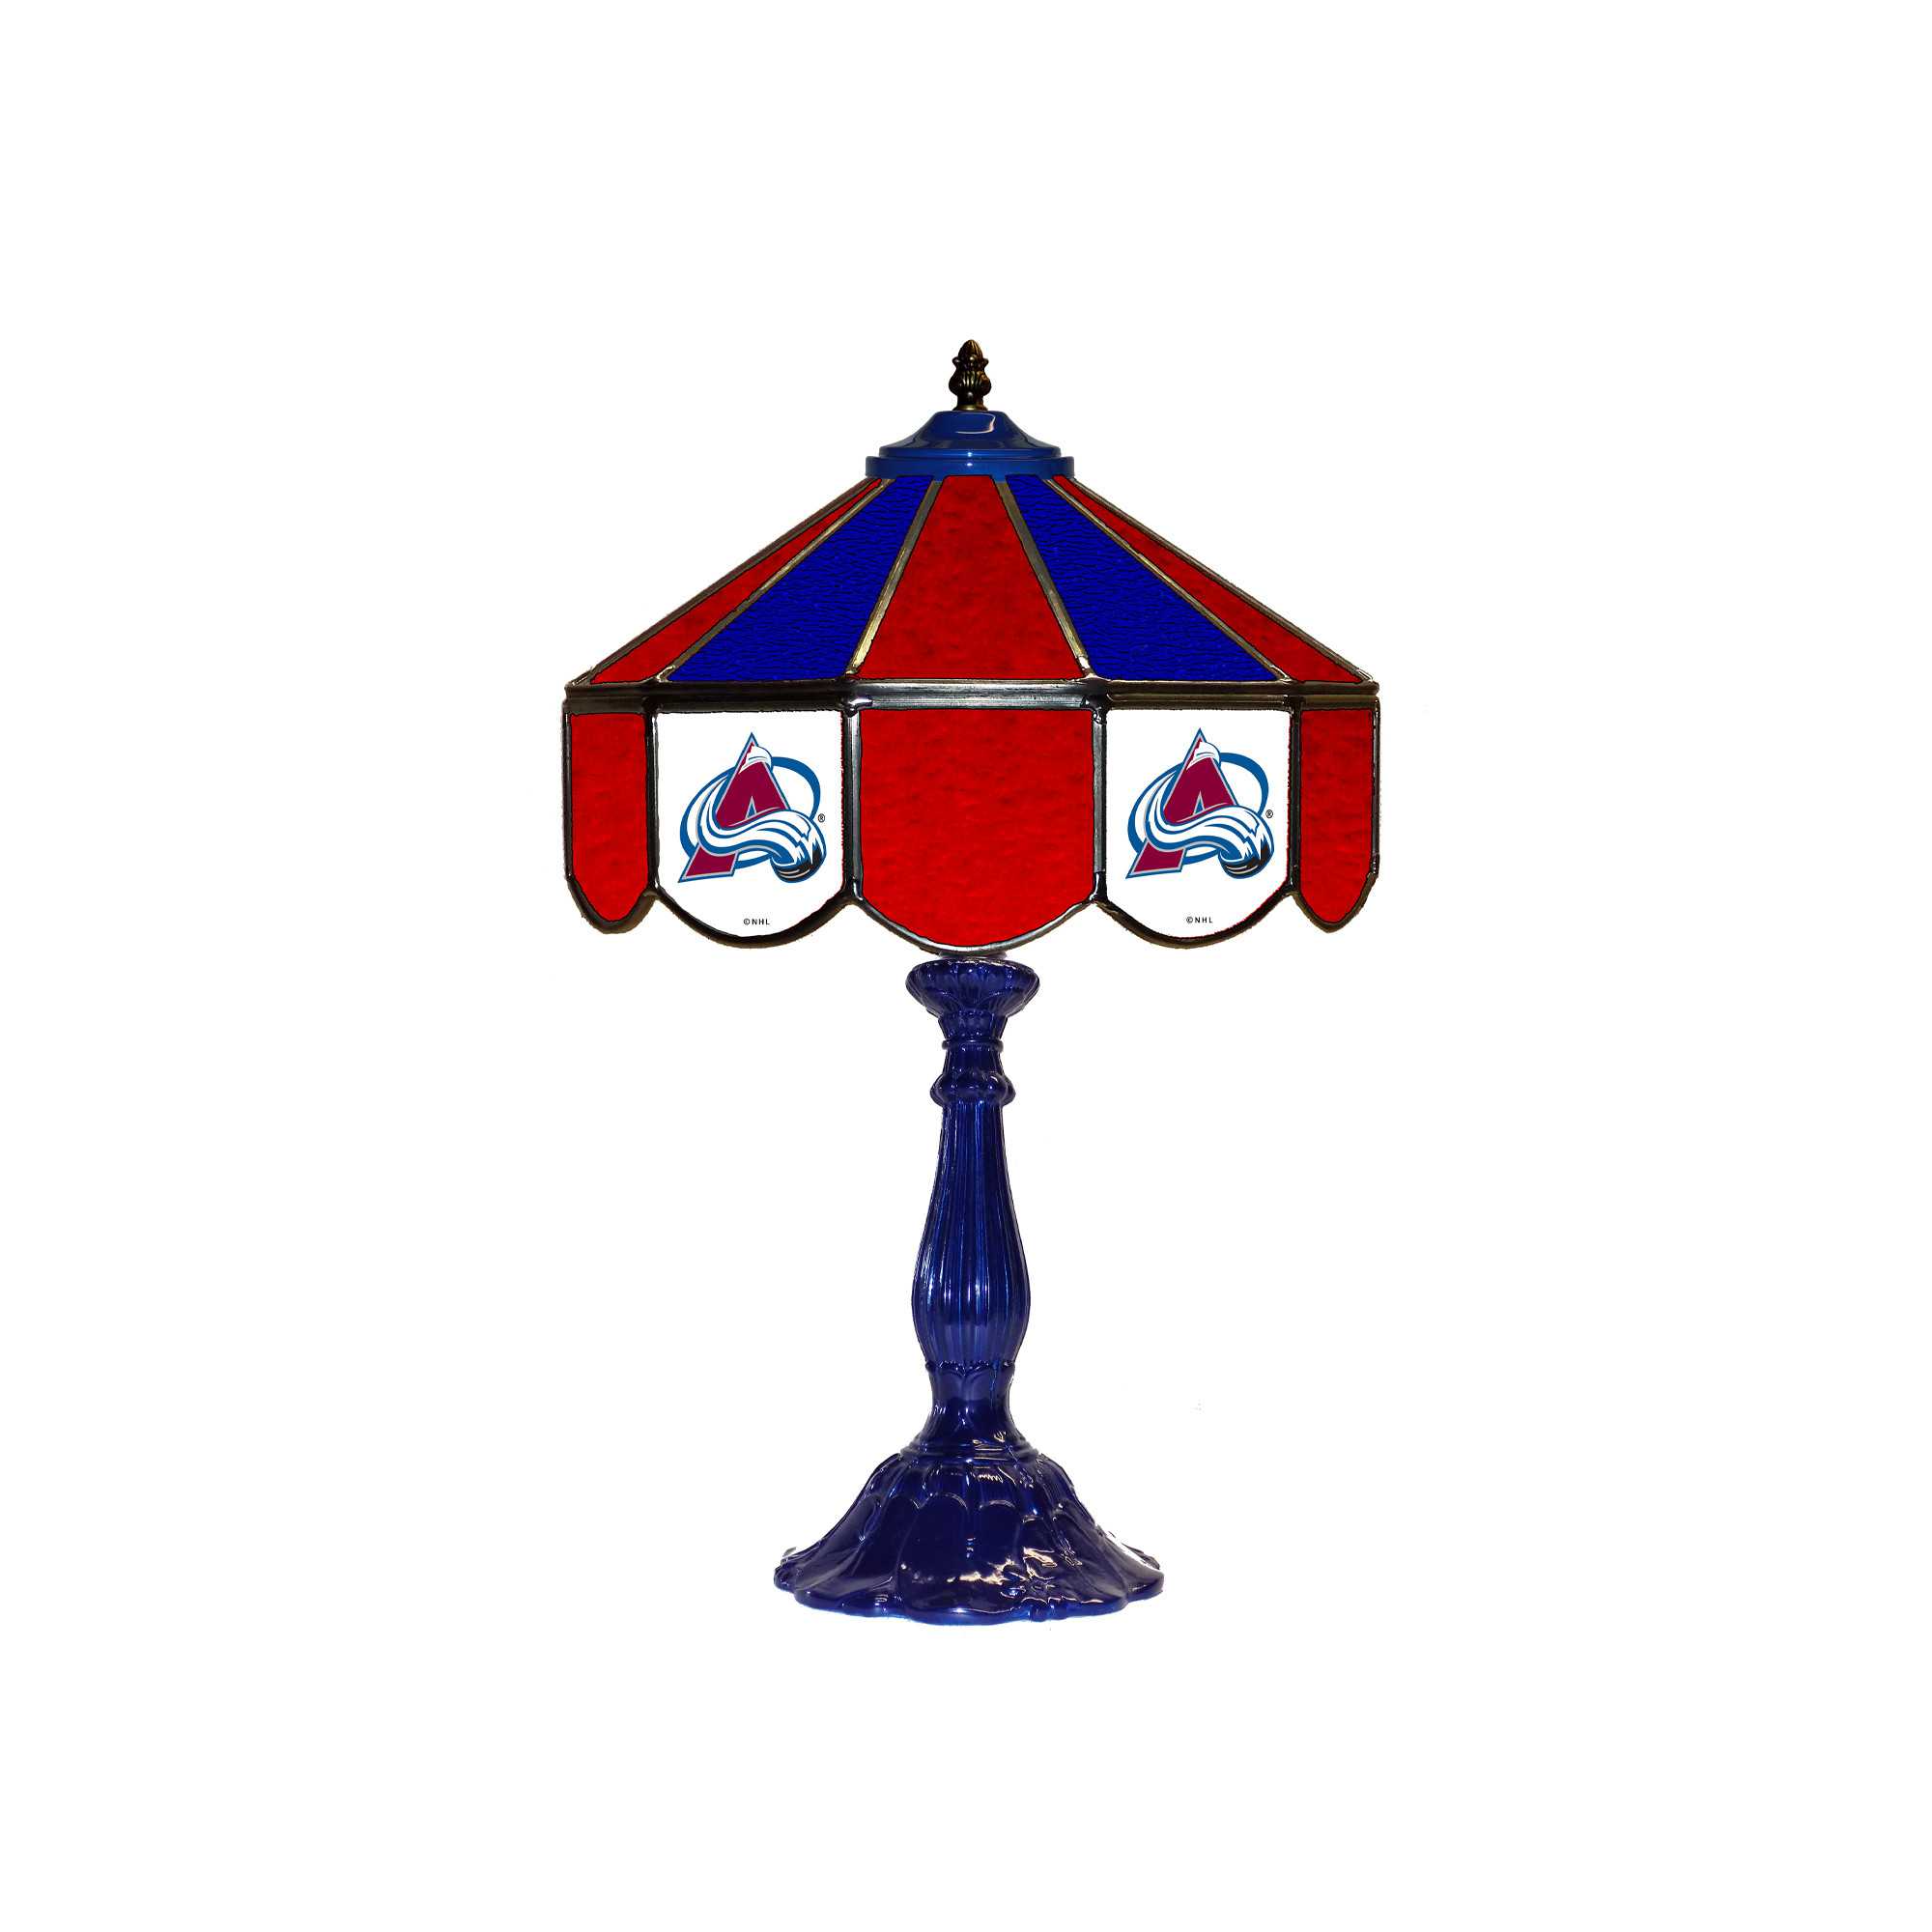 COLORODO AVALANCHE 21" GLASS TABLE LAMP